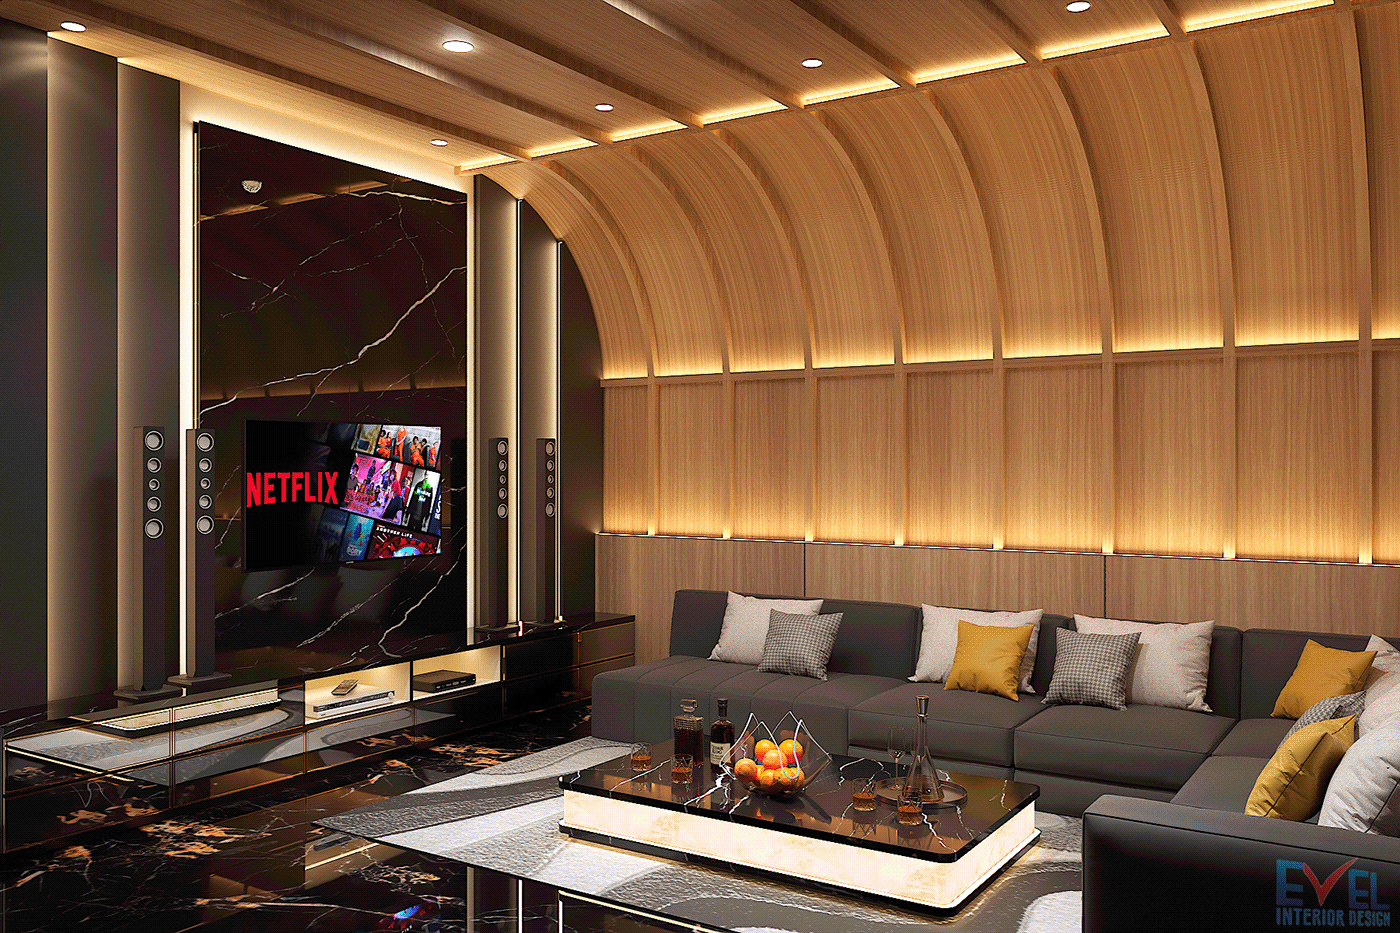 Interior interiordesign karaoke karaoke room visualization Render 3D modern vray KTV